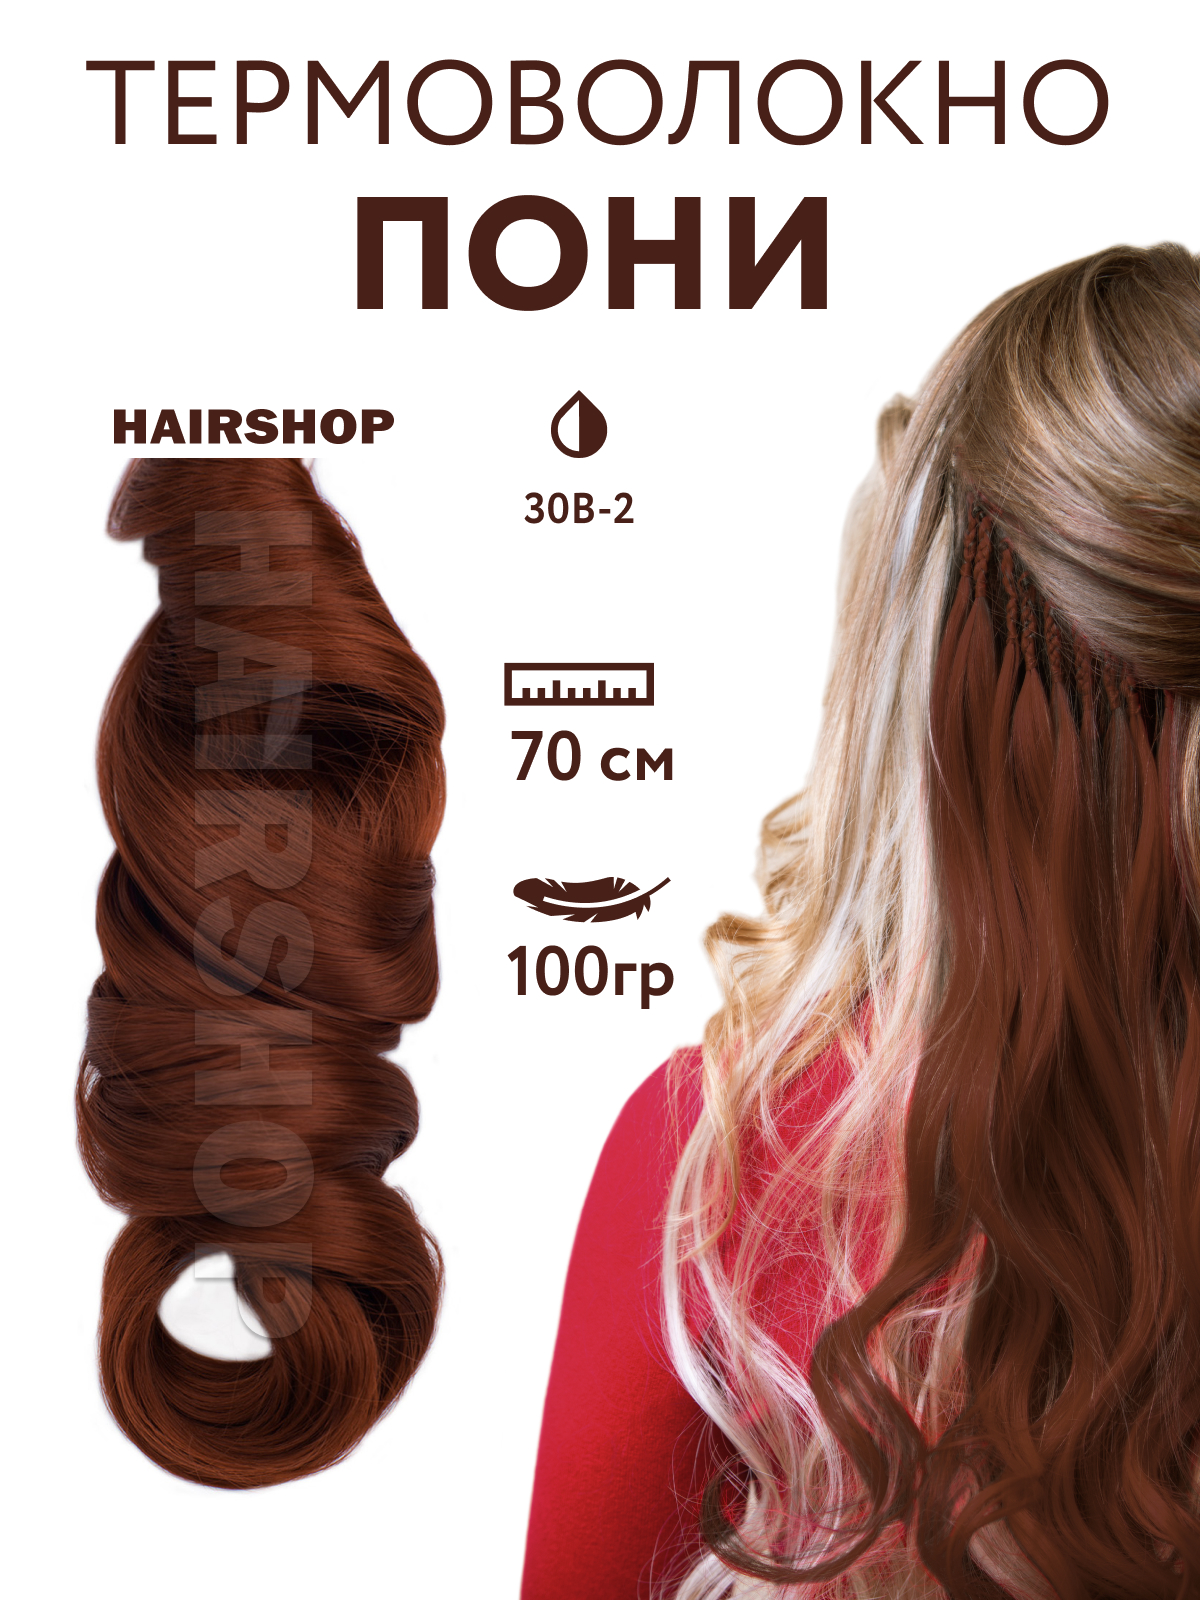 Канекалон HAIRSHOP Пони HairUp для точечного афронаращивания 30B-2 Натурально рыжий 1,4м канекалон hairshop пони hairup для точечного афронаращивания о1 персик пастельный 1 4м